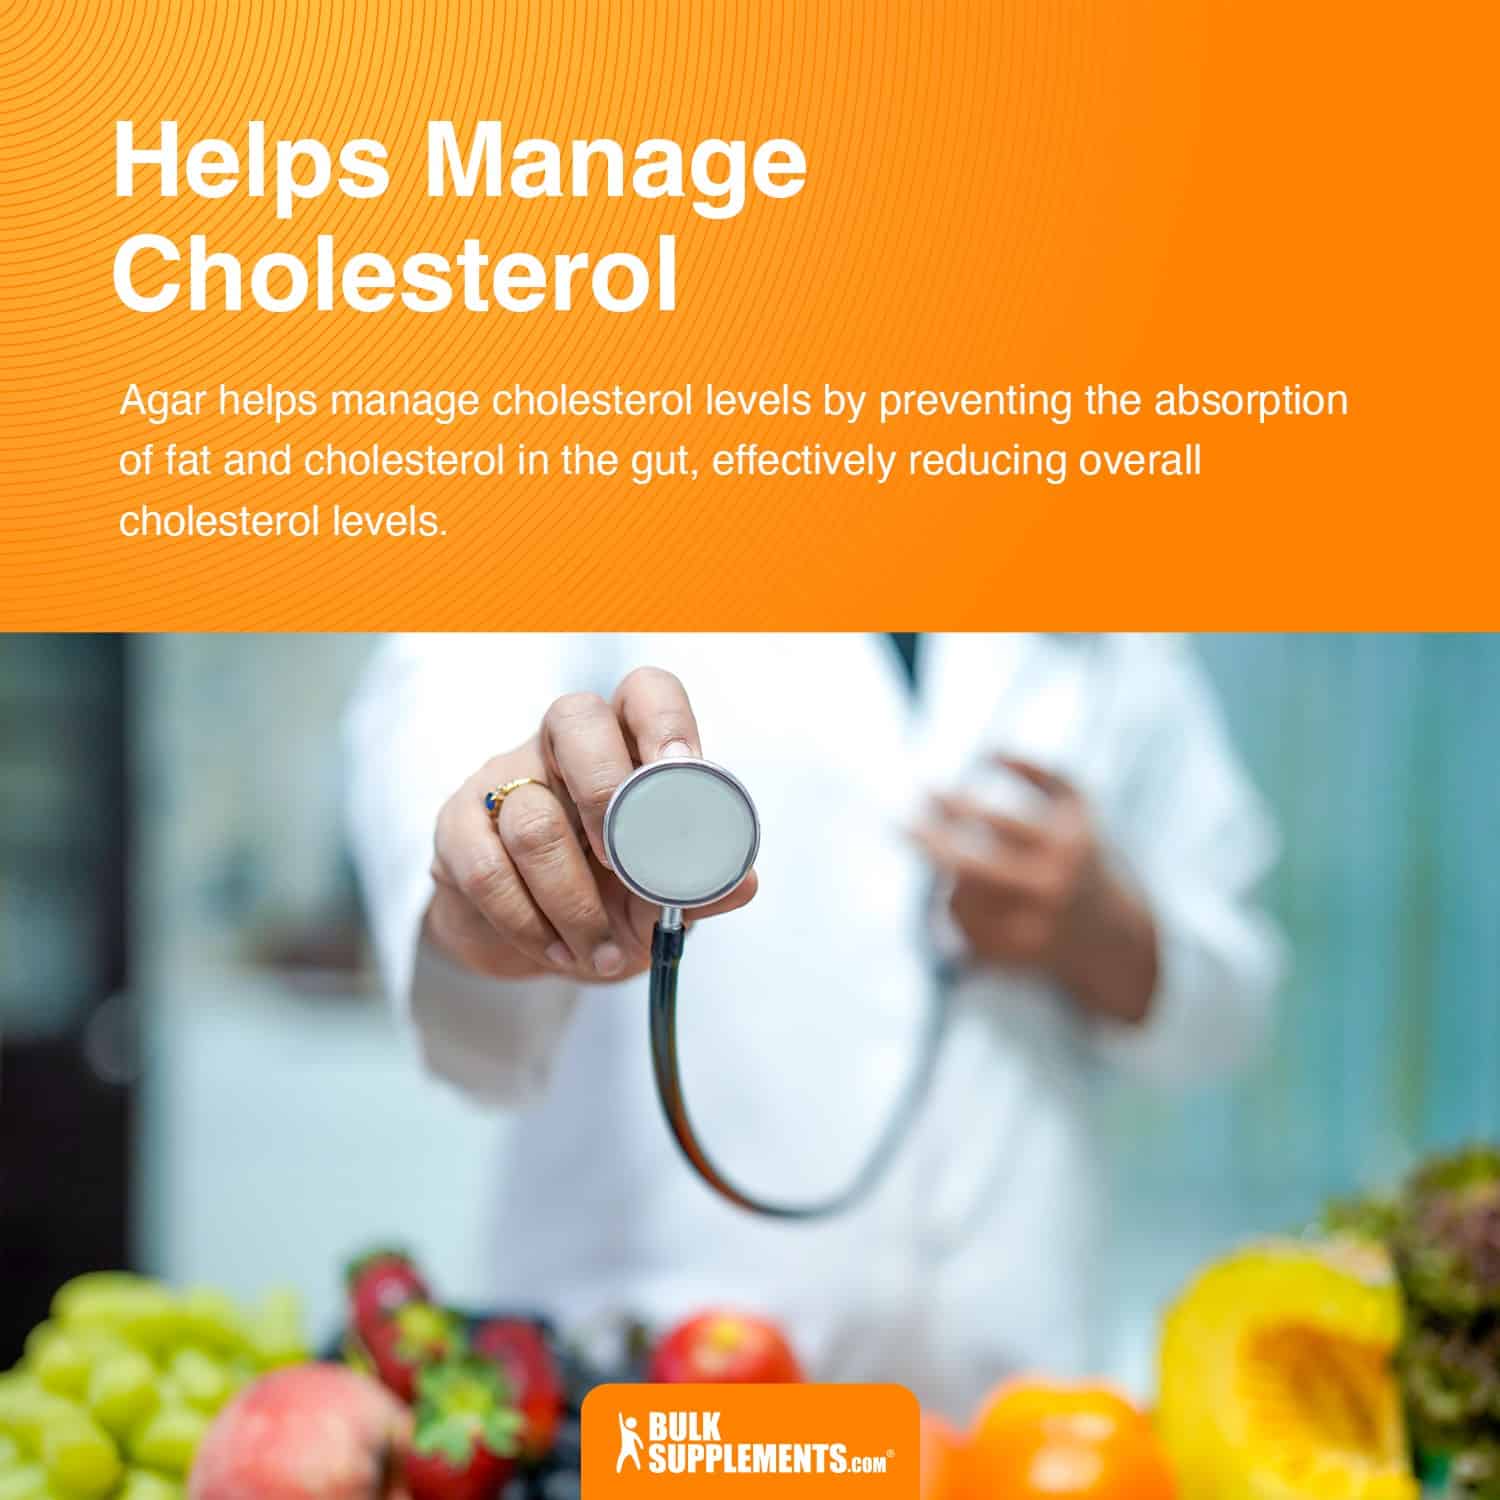 agar agar helps manage cholesterol